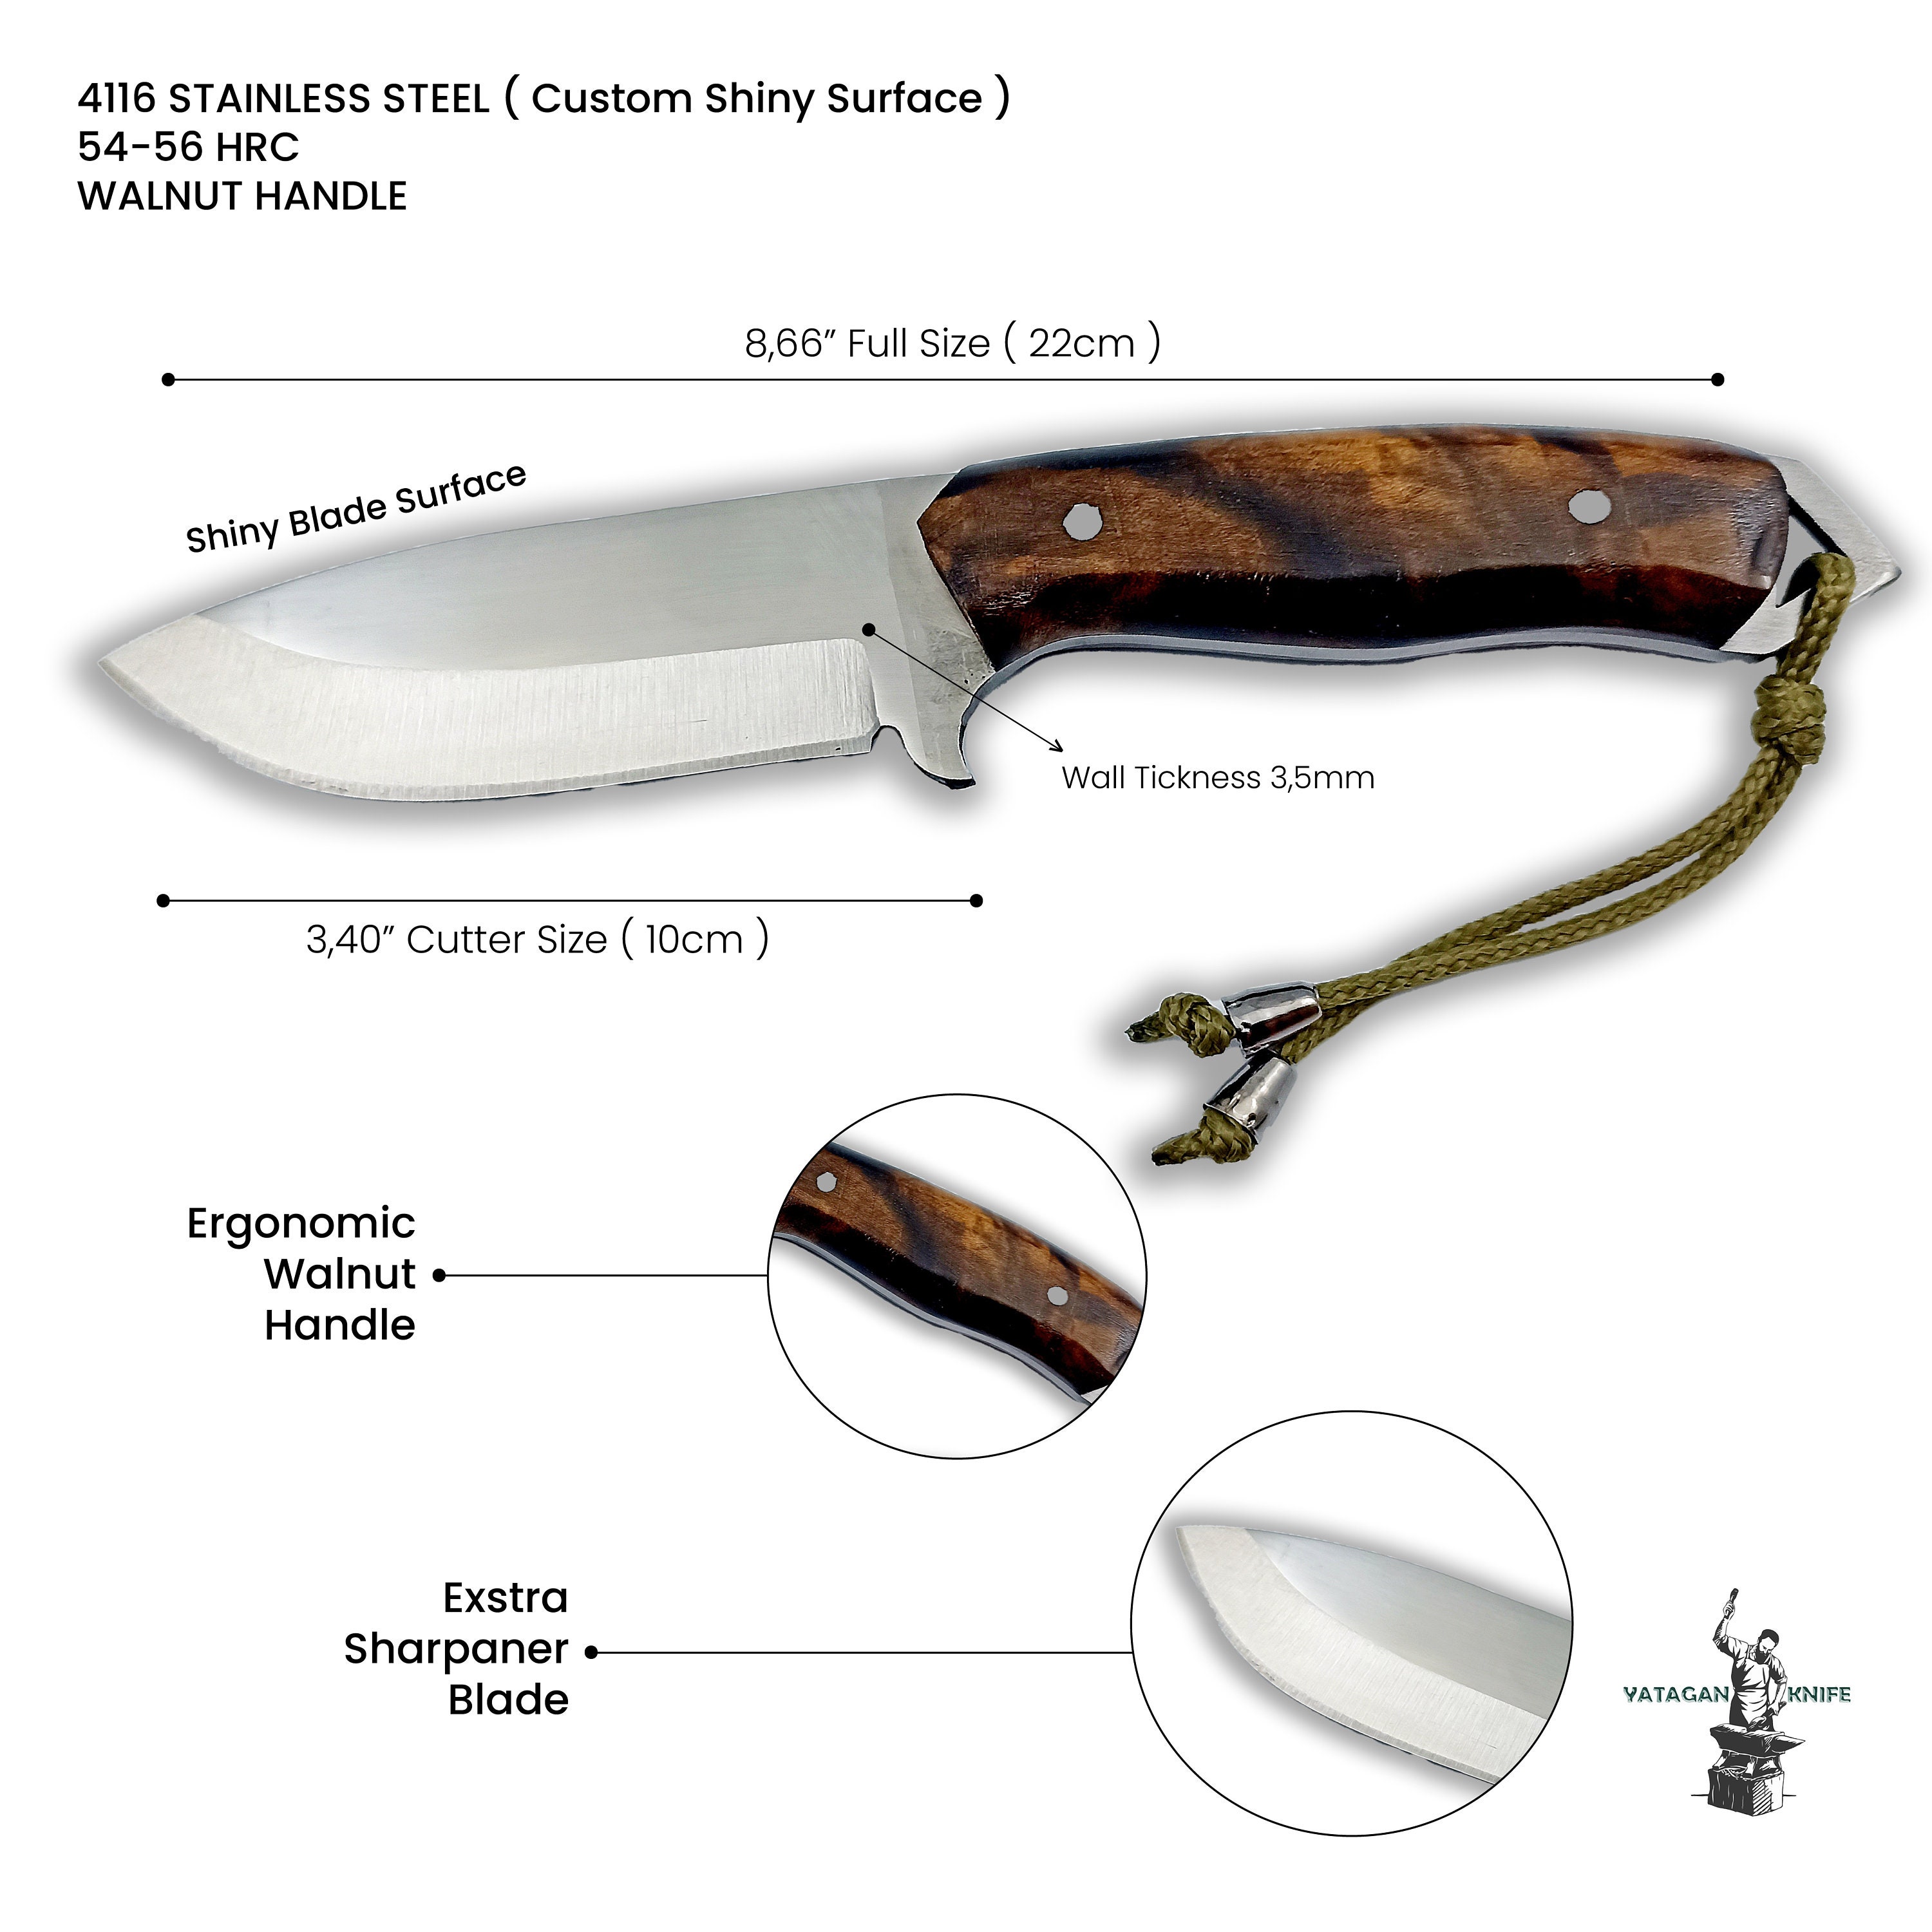 KNIFE MAKING ESSENTIAL TOOLS  Cuchillos artesanales, Plantillas cuchillos,  Cuchillos y espadas